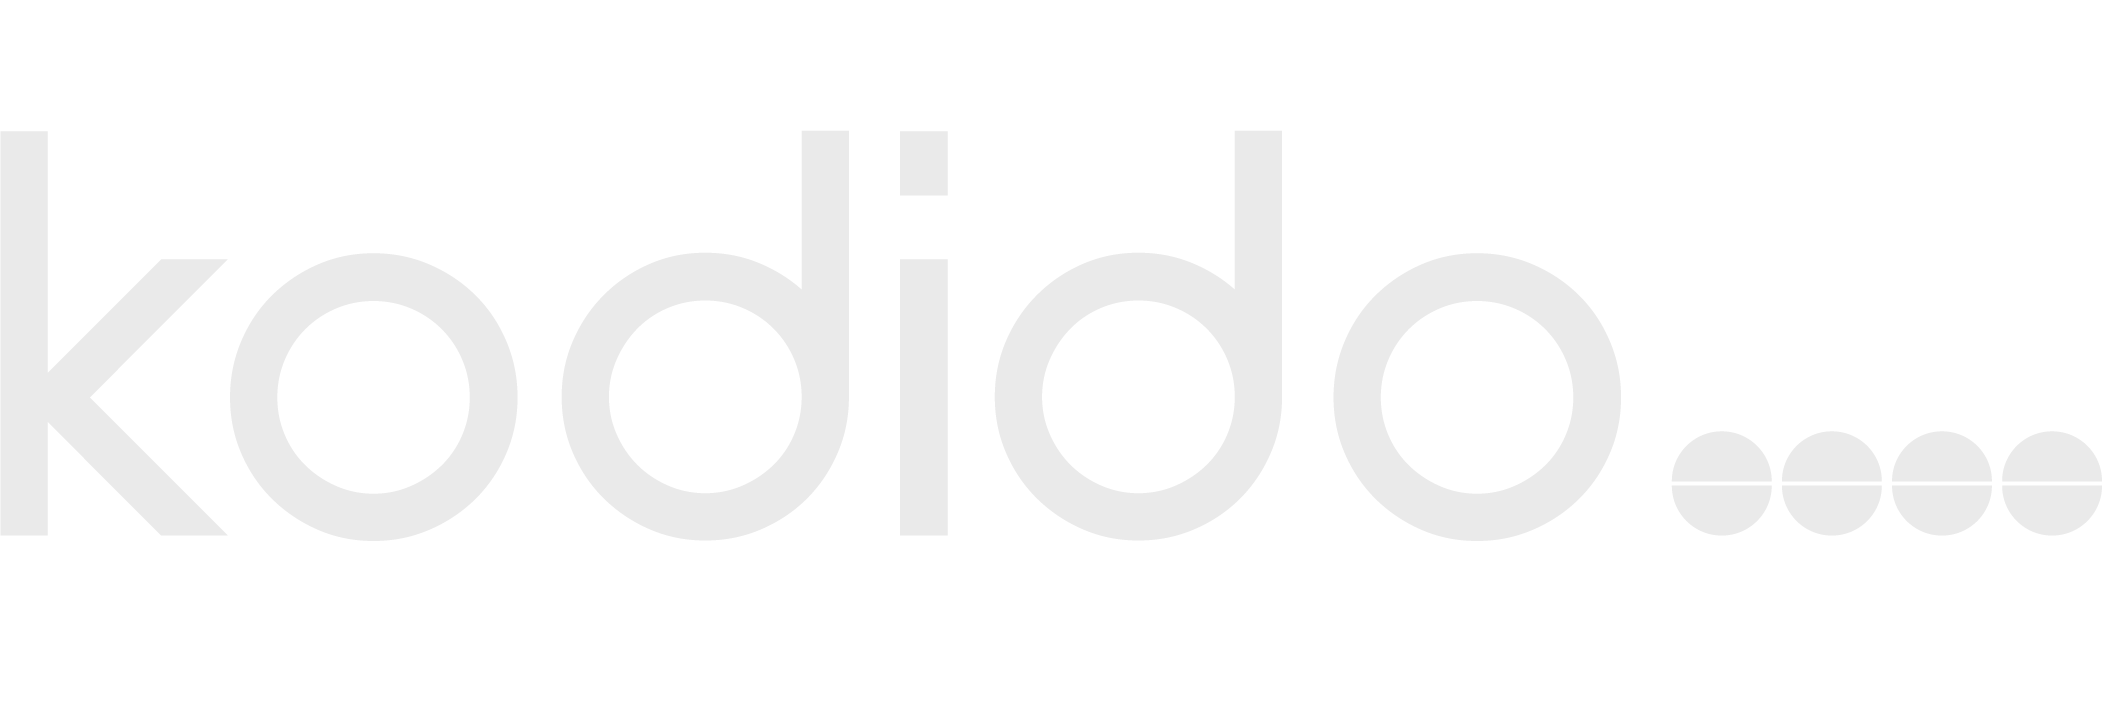 Logo Kodido